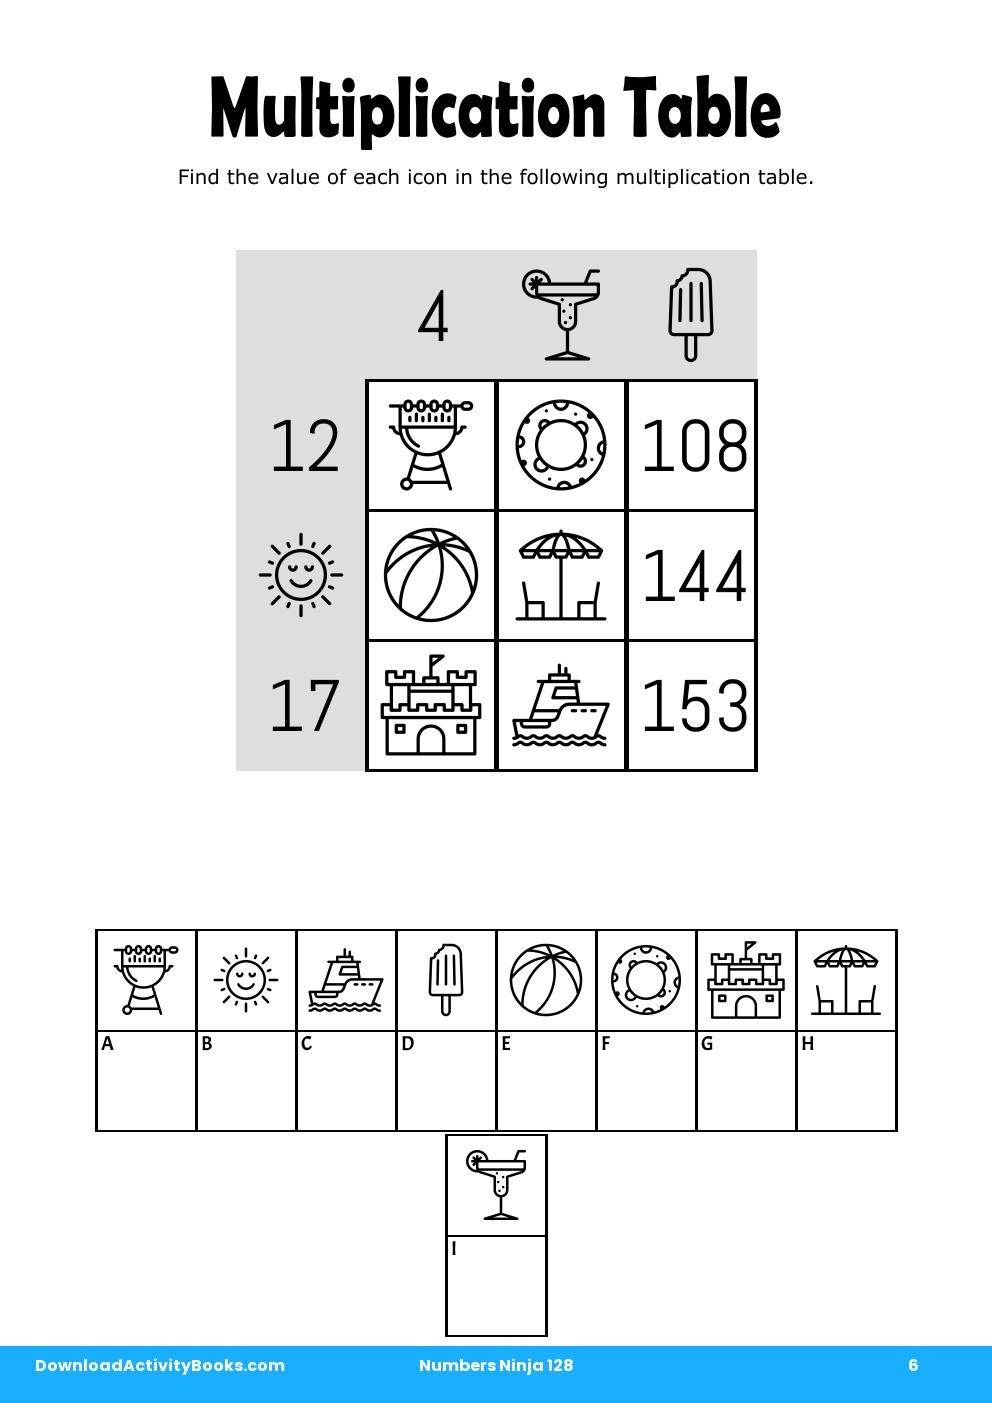 Multiplication Table in Numbers Ninja 128